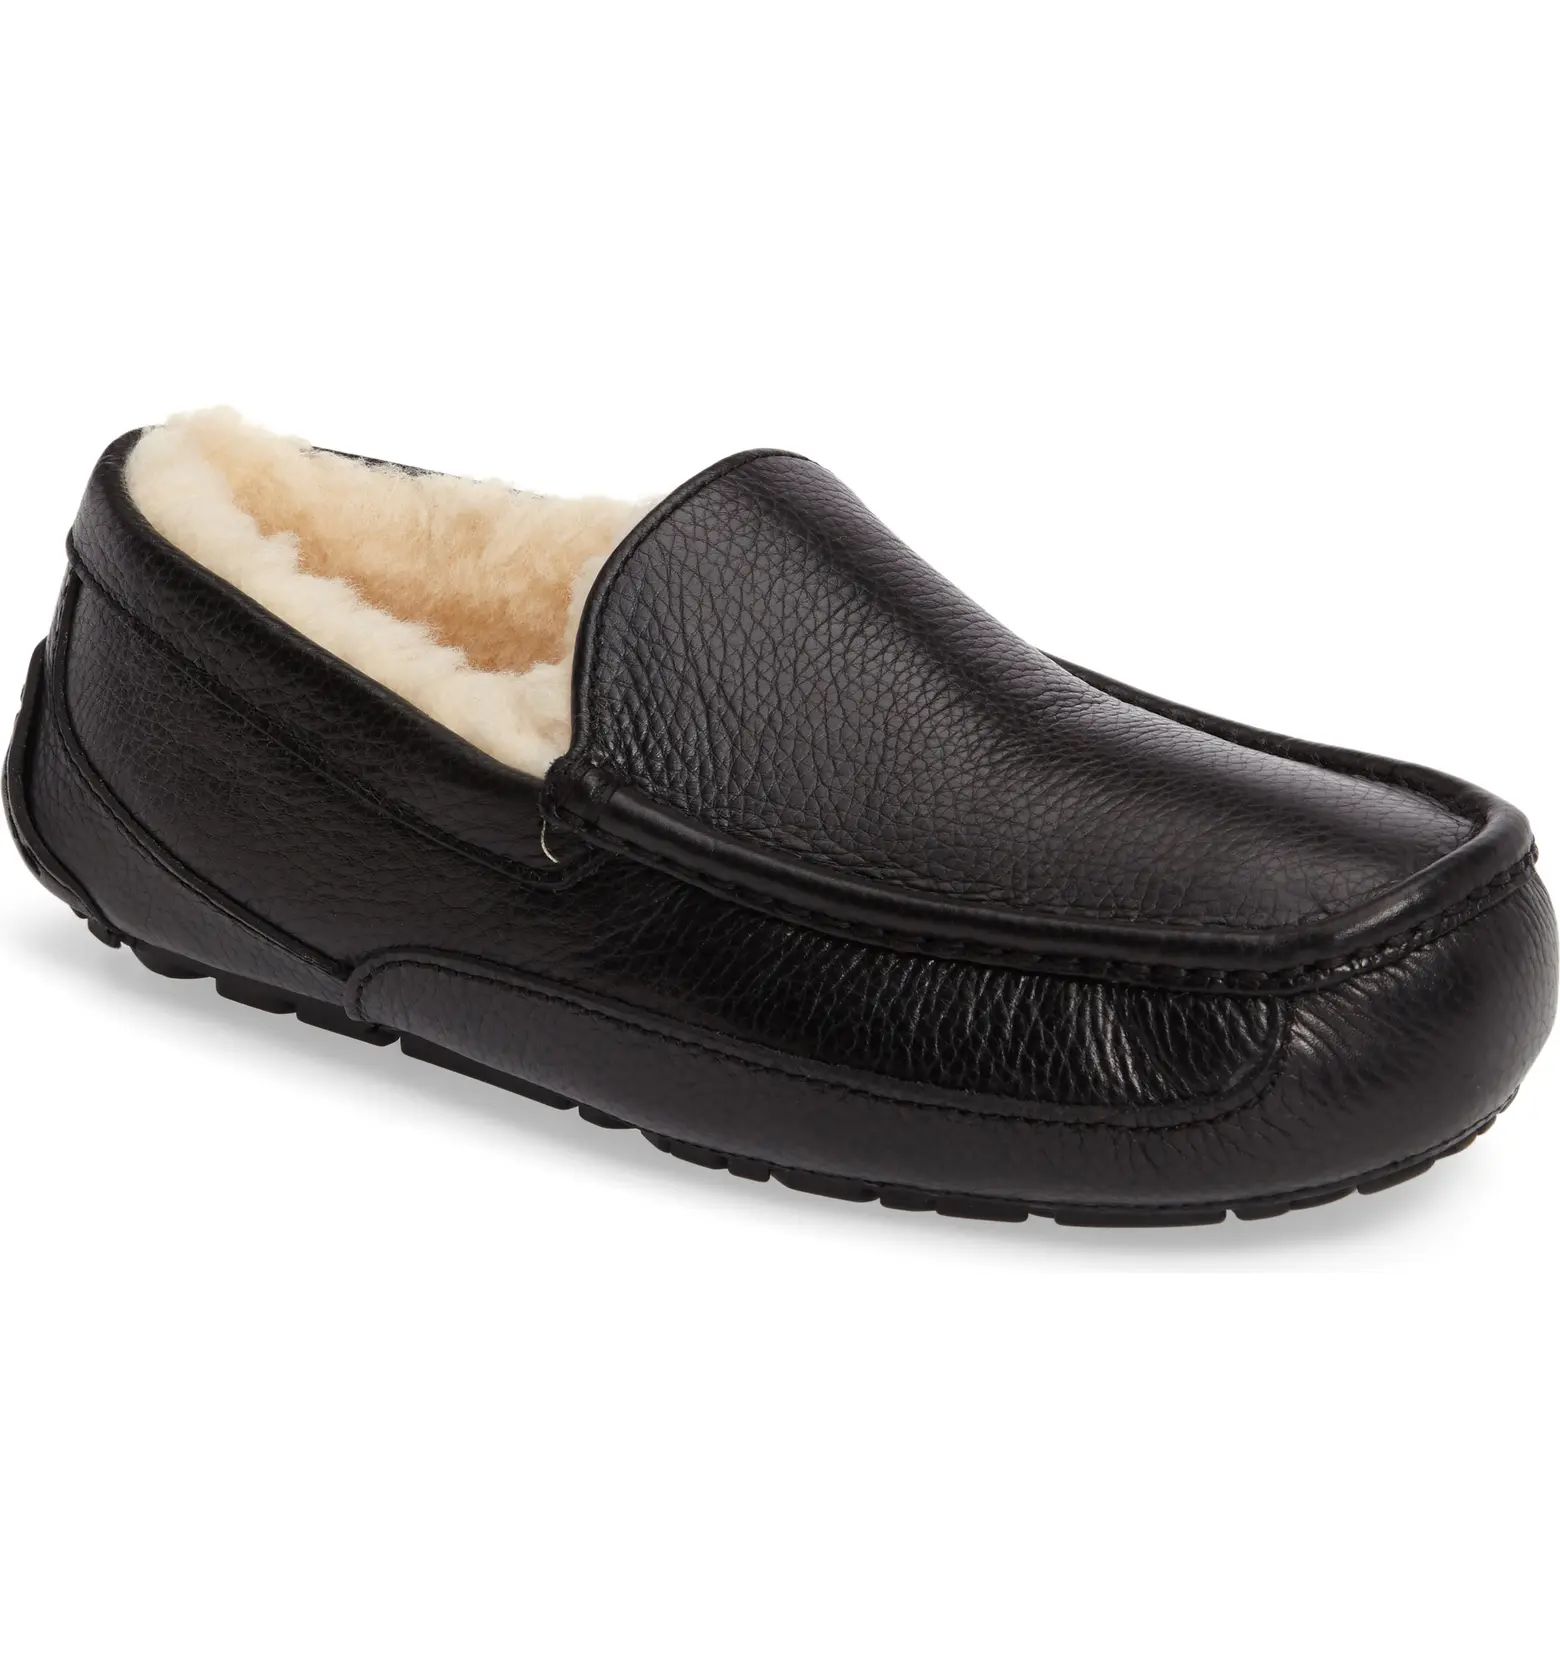 Ascot Leather Slipper (Men) | Nordstrom